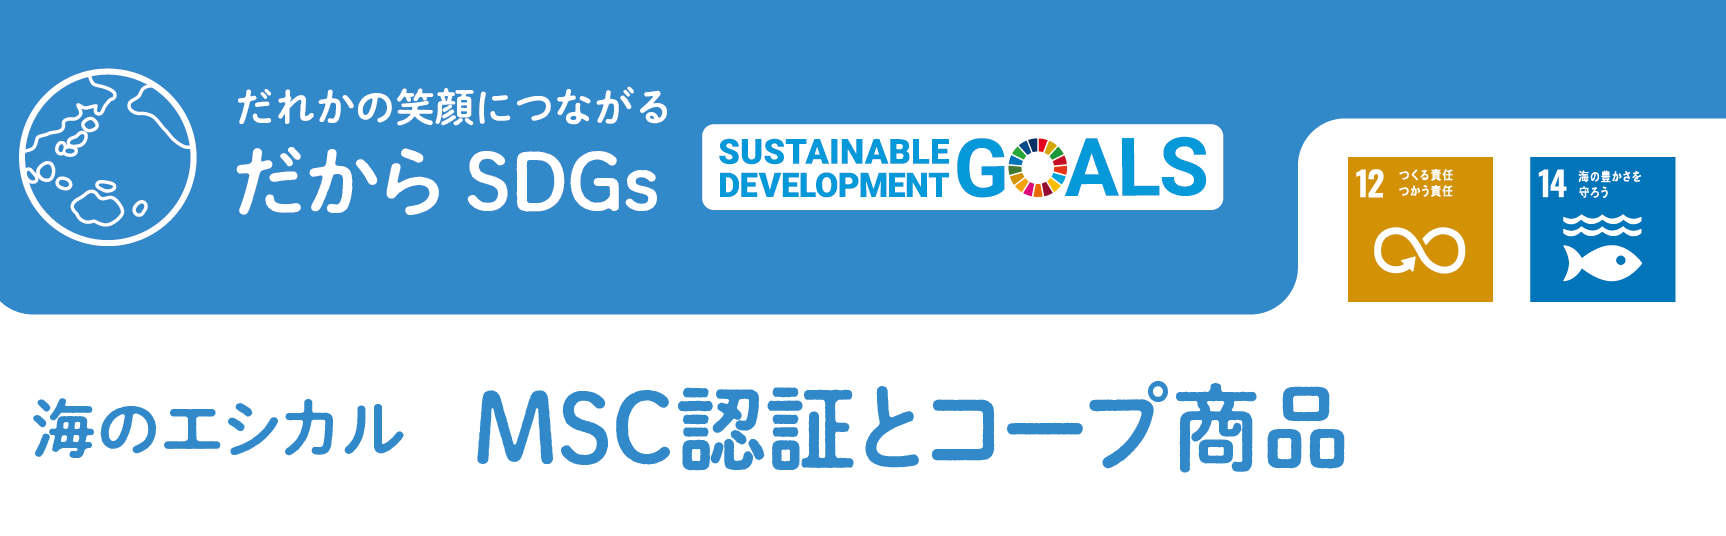 SDGs_トップ.png